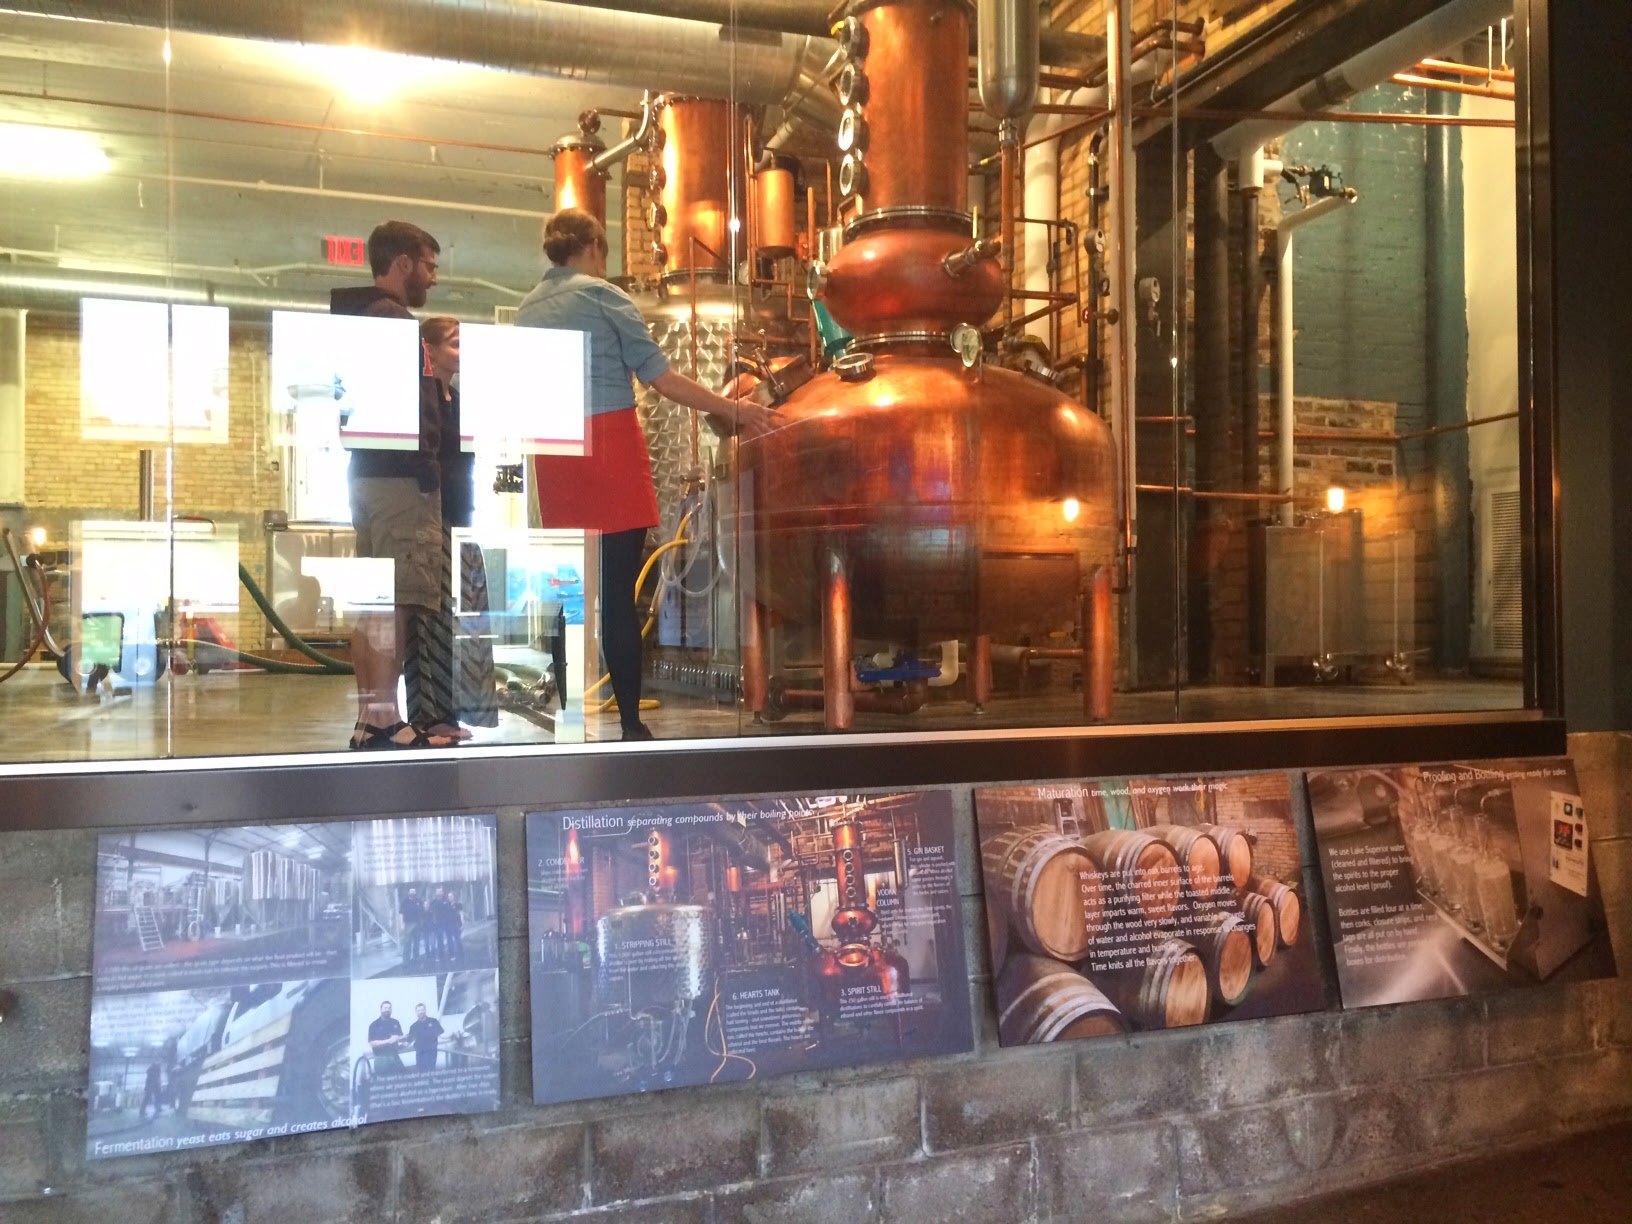 Vikre Distillery